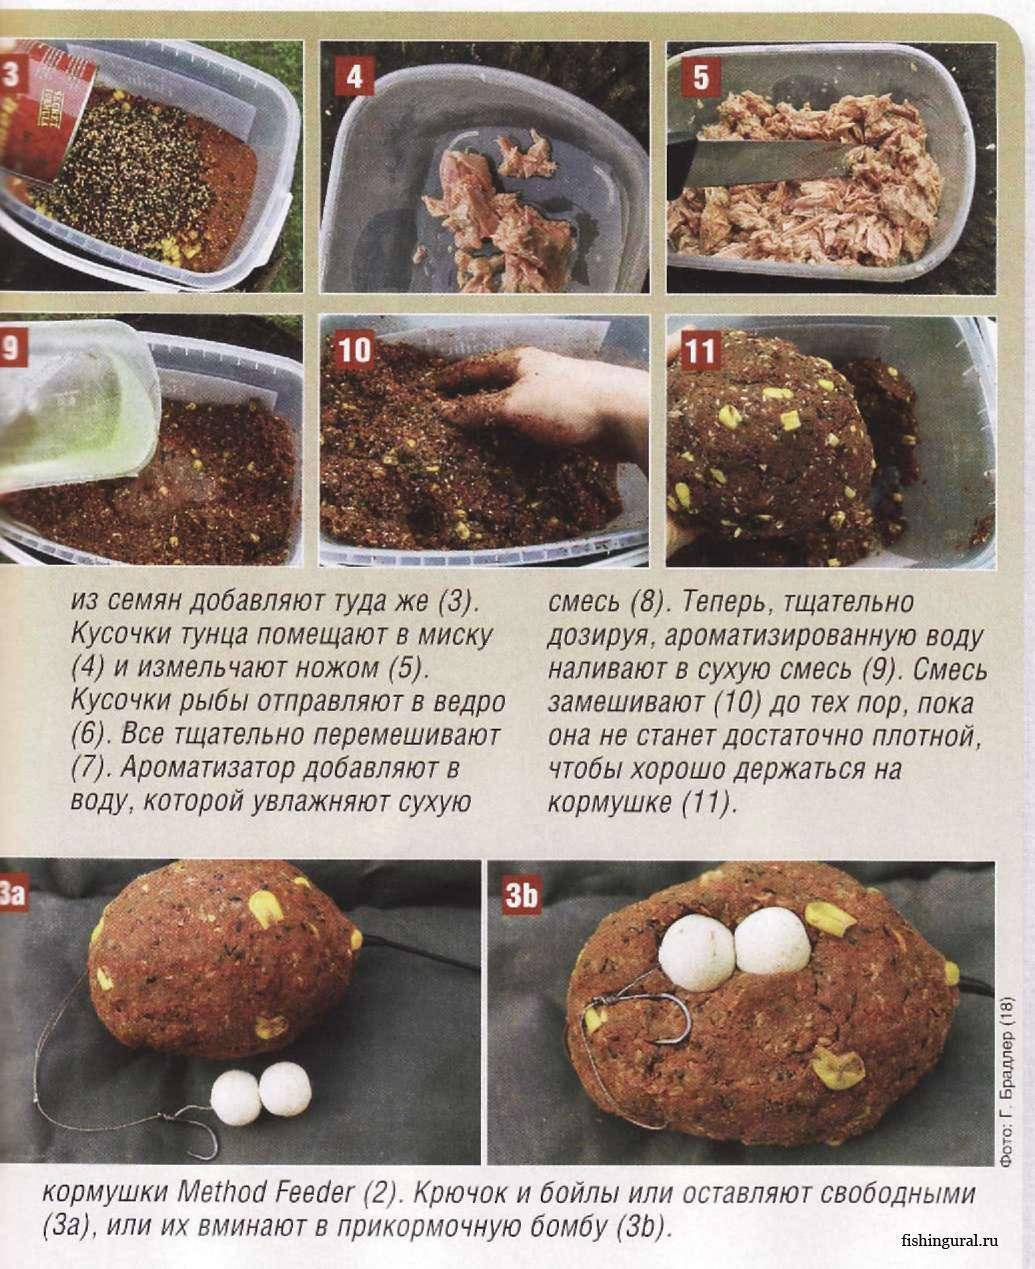 Прикормка для леща своими руками: рецепт приготовления. как приготовить прикормку для леща?